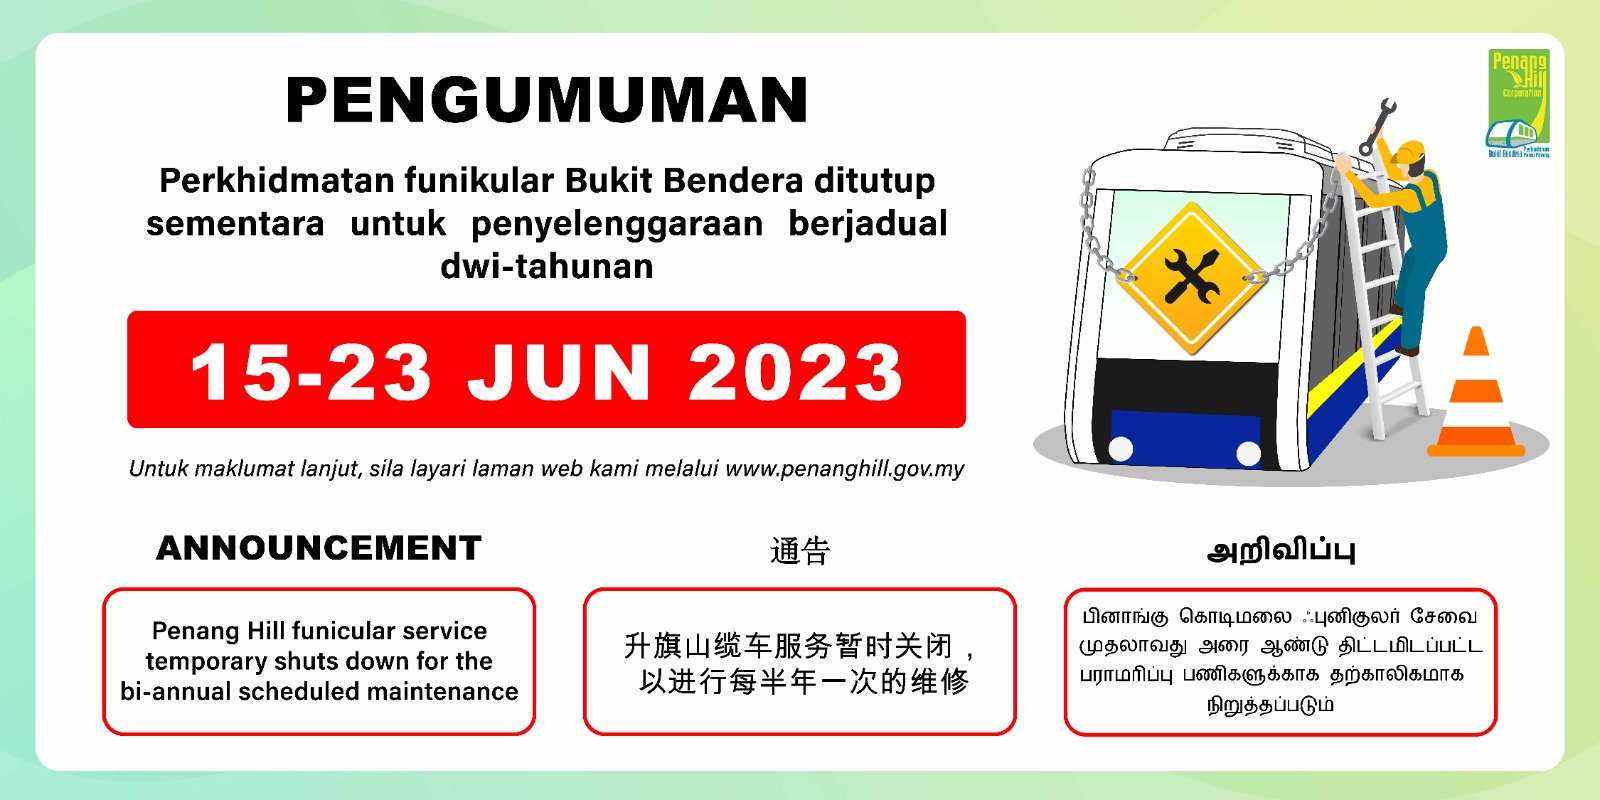 Penyelenggaran Berjadual Dwi-Tahunan Perkhidmatan Funikular (15-23 Jun 2023)